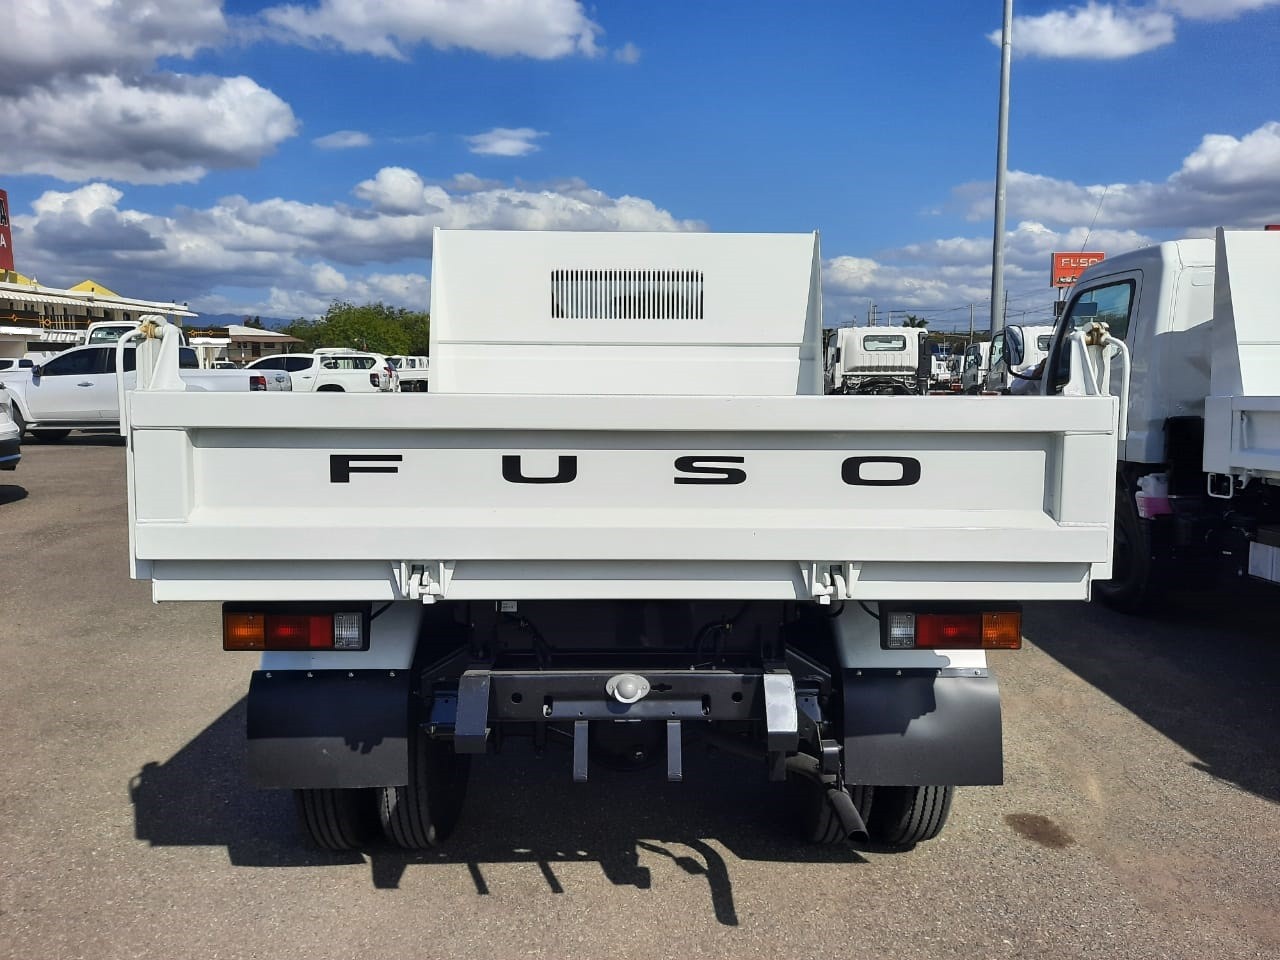 camiones y vehiculos pesados - CAMION MITSUBISHI  VOLTEO 2024  3